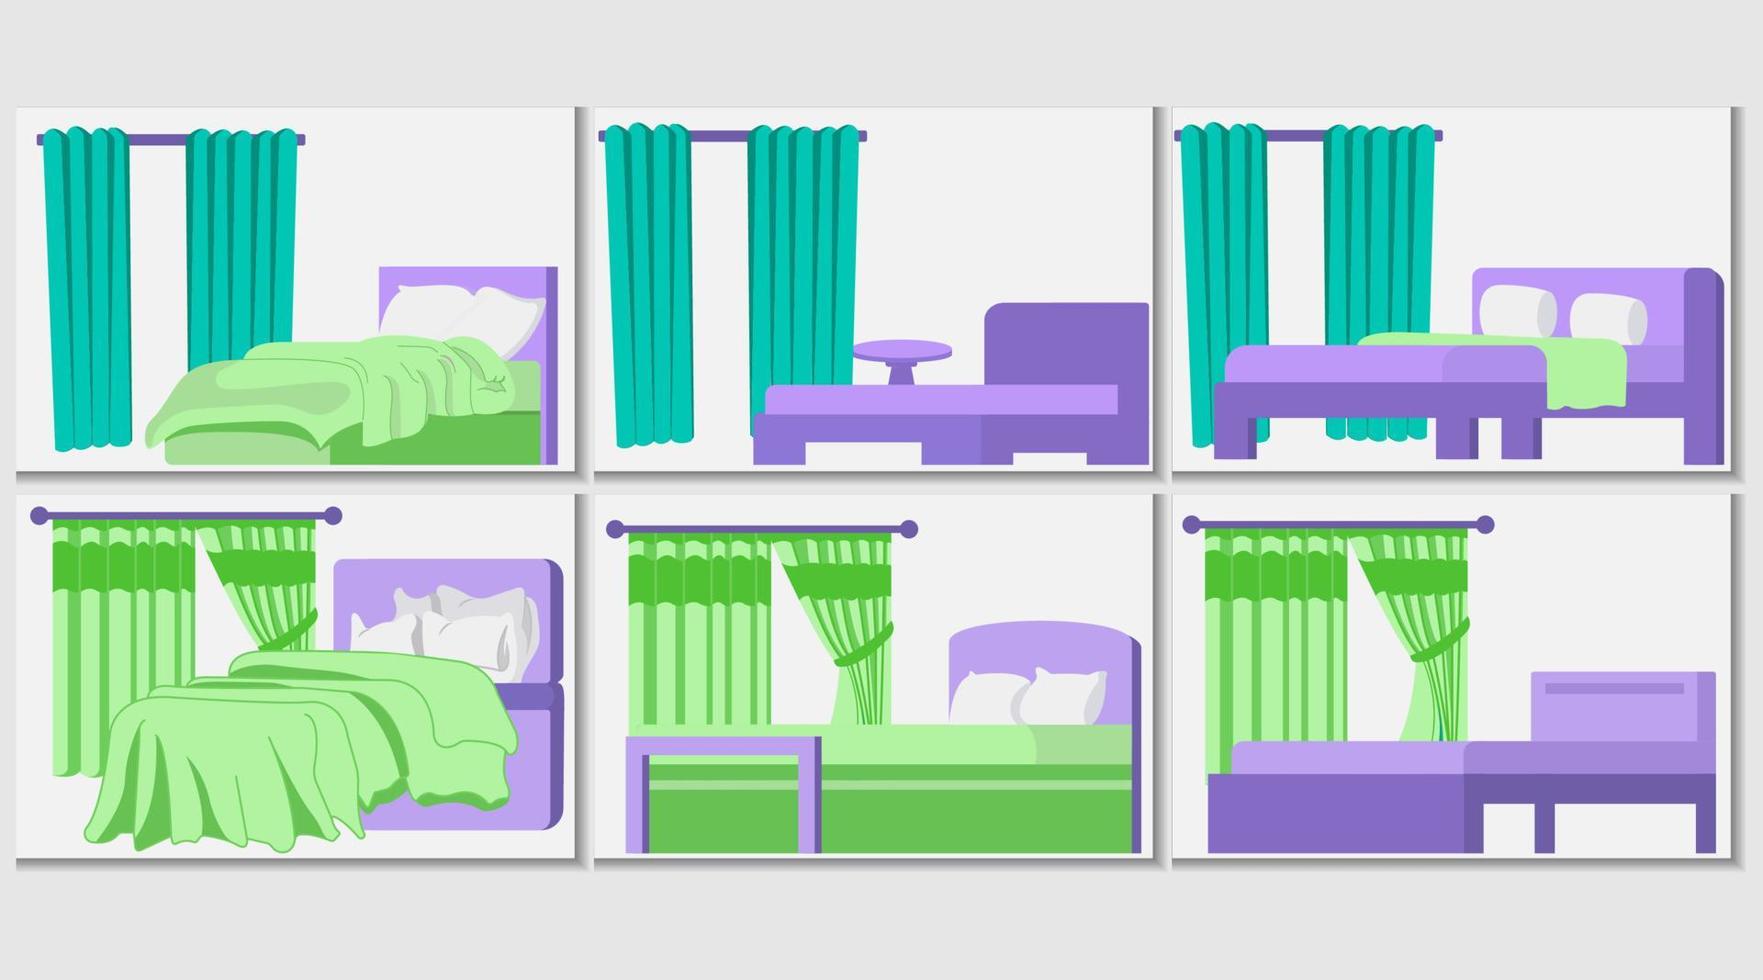 lit en bois de style dessin animé. intérieur de meubles, chambre à coucher confortable. illustration vectorielle vecteur